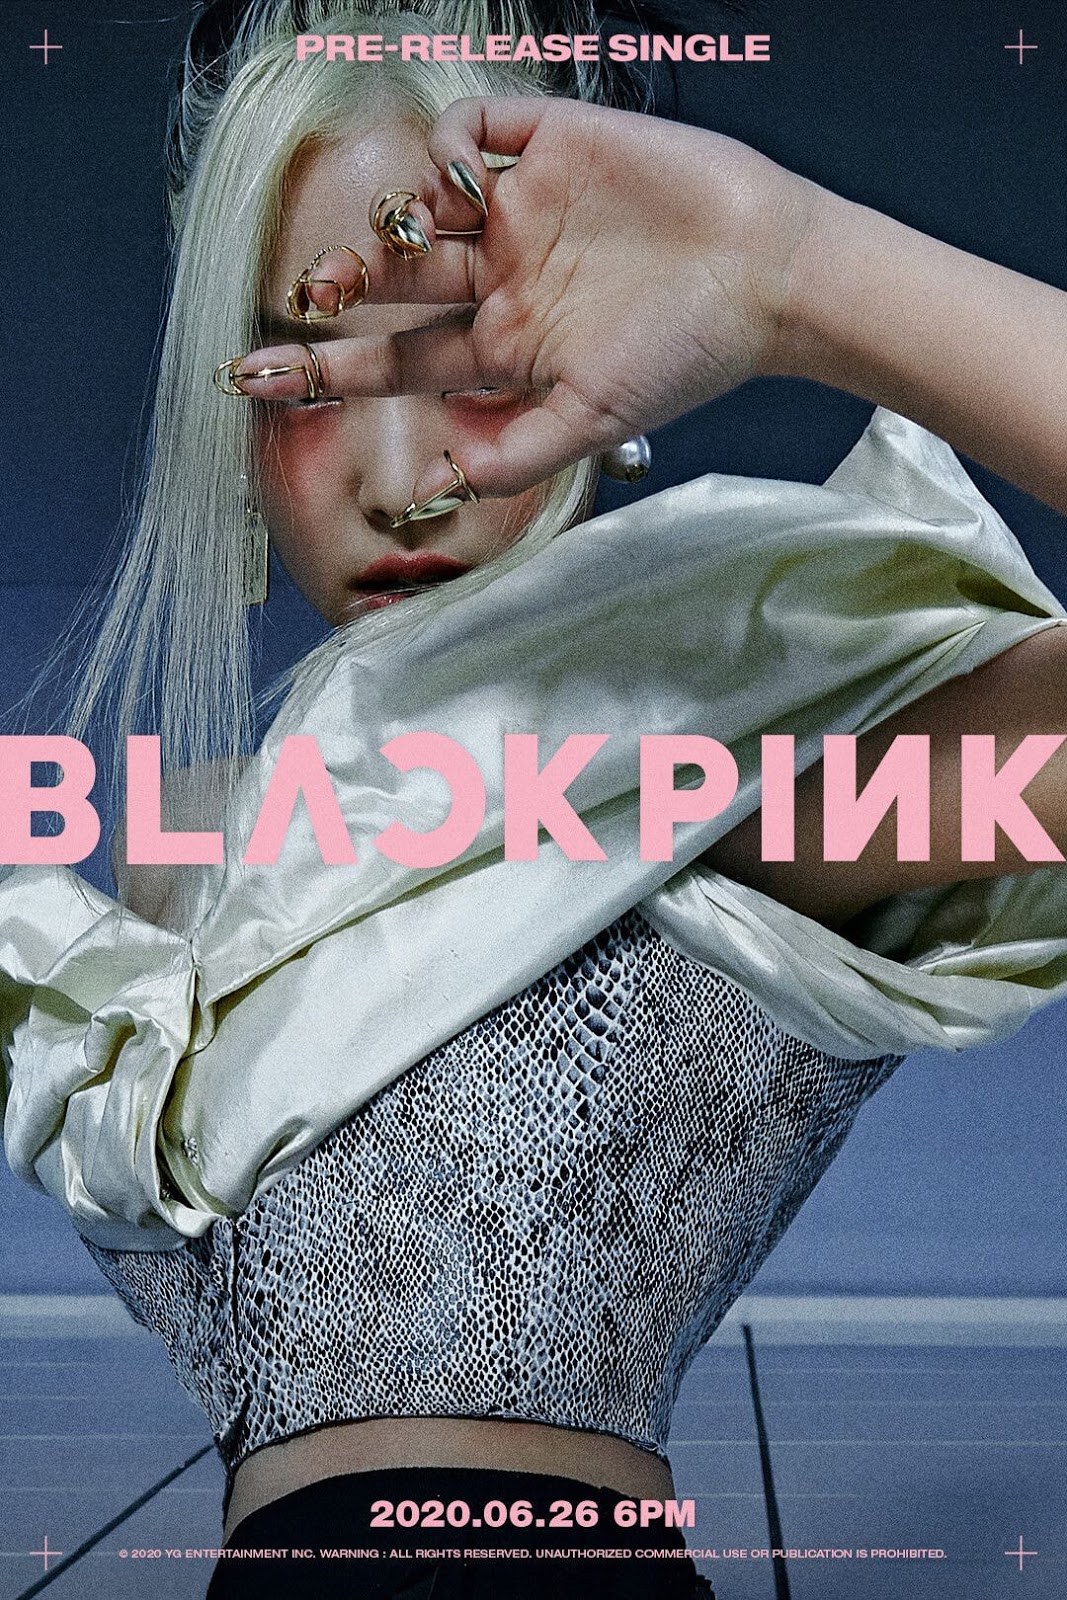 [THEQOO] Black Pink'in 26 Haziran dönüşünden ilk teaser fotoğrafları